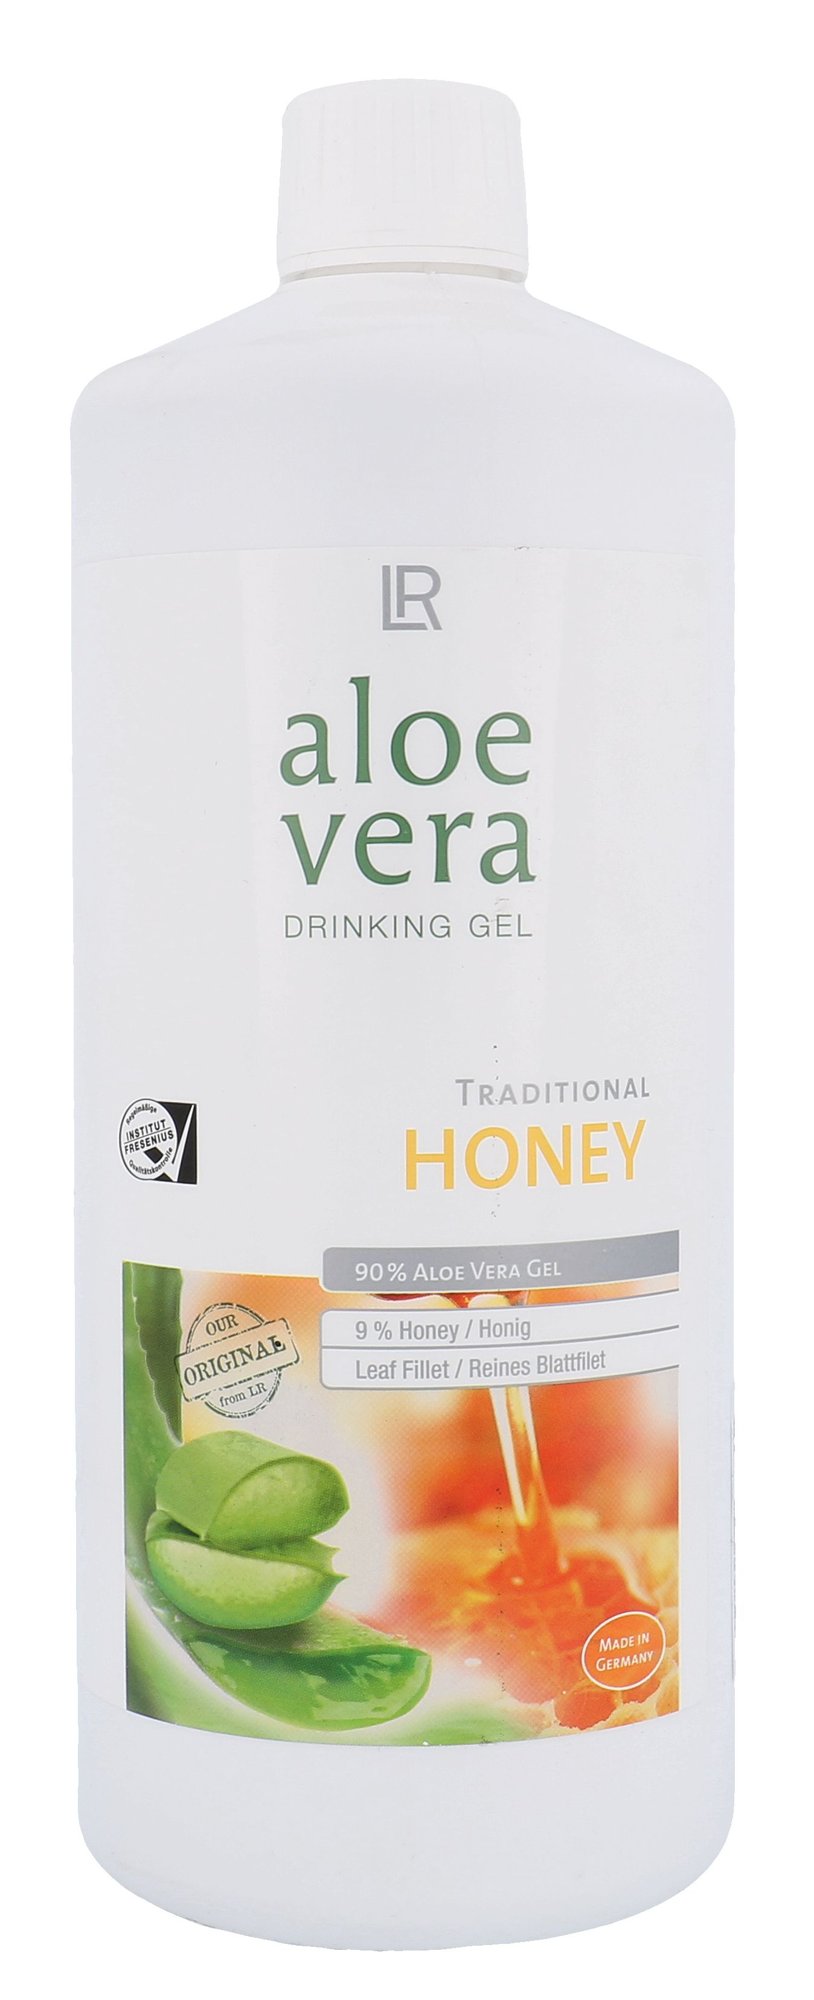 LR Aloe Vera Drinking Gel Honey